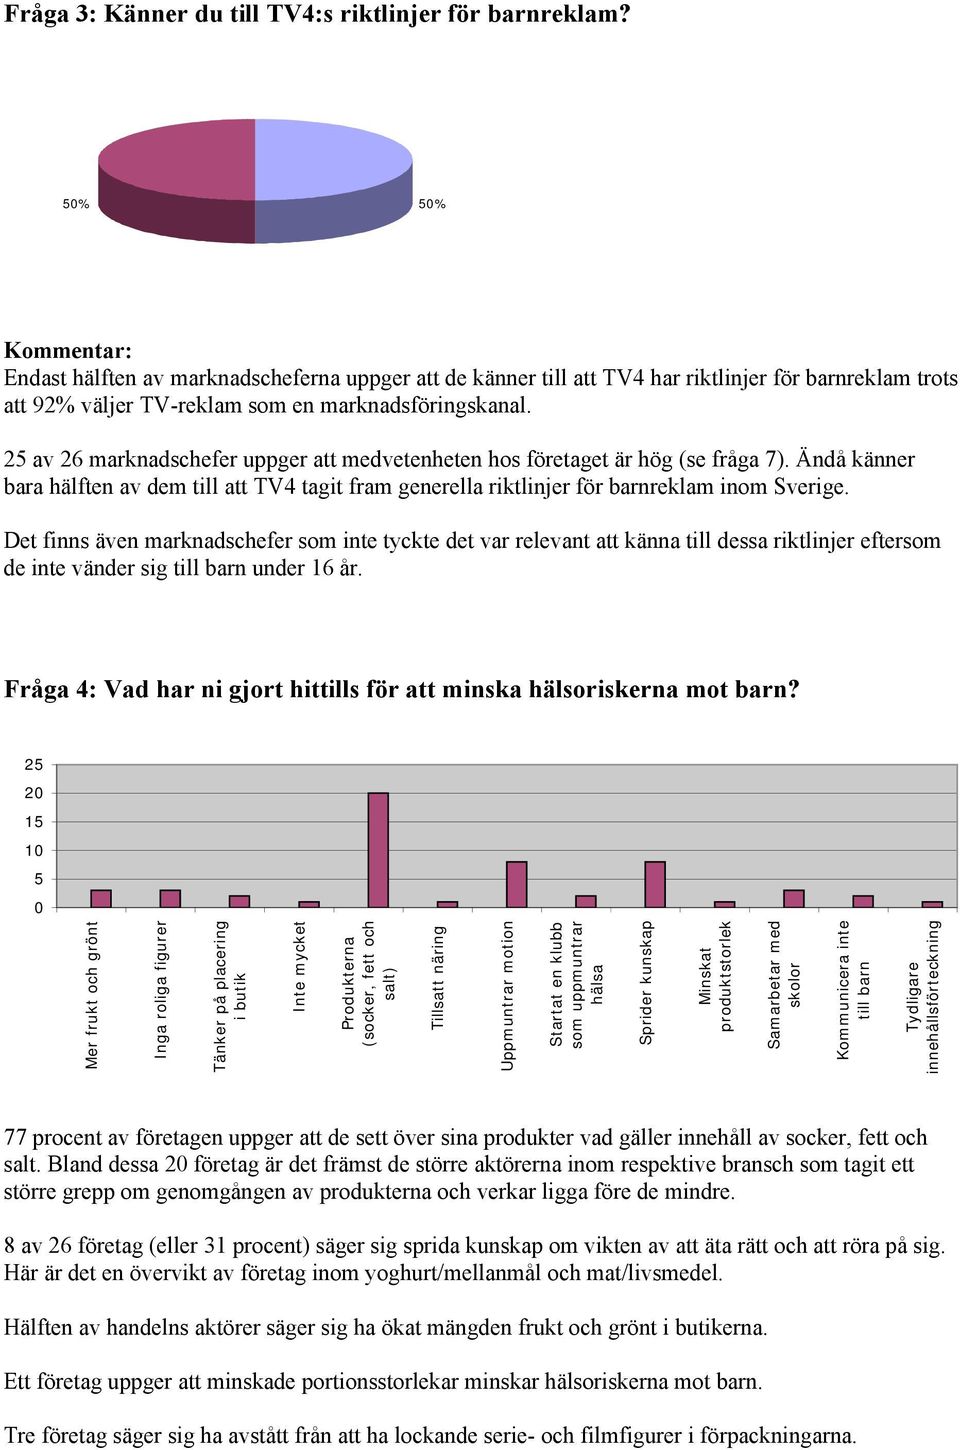 25 av 26 marknadschefer uppger att medvetenheten hos företaget är hög (se fråga 7). Ändå känner bara hälften av dem till att TV4 tagit fram generella riktlinjer för barnreklam inom Sverige.